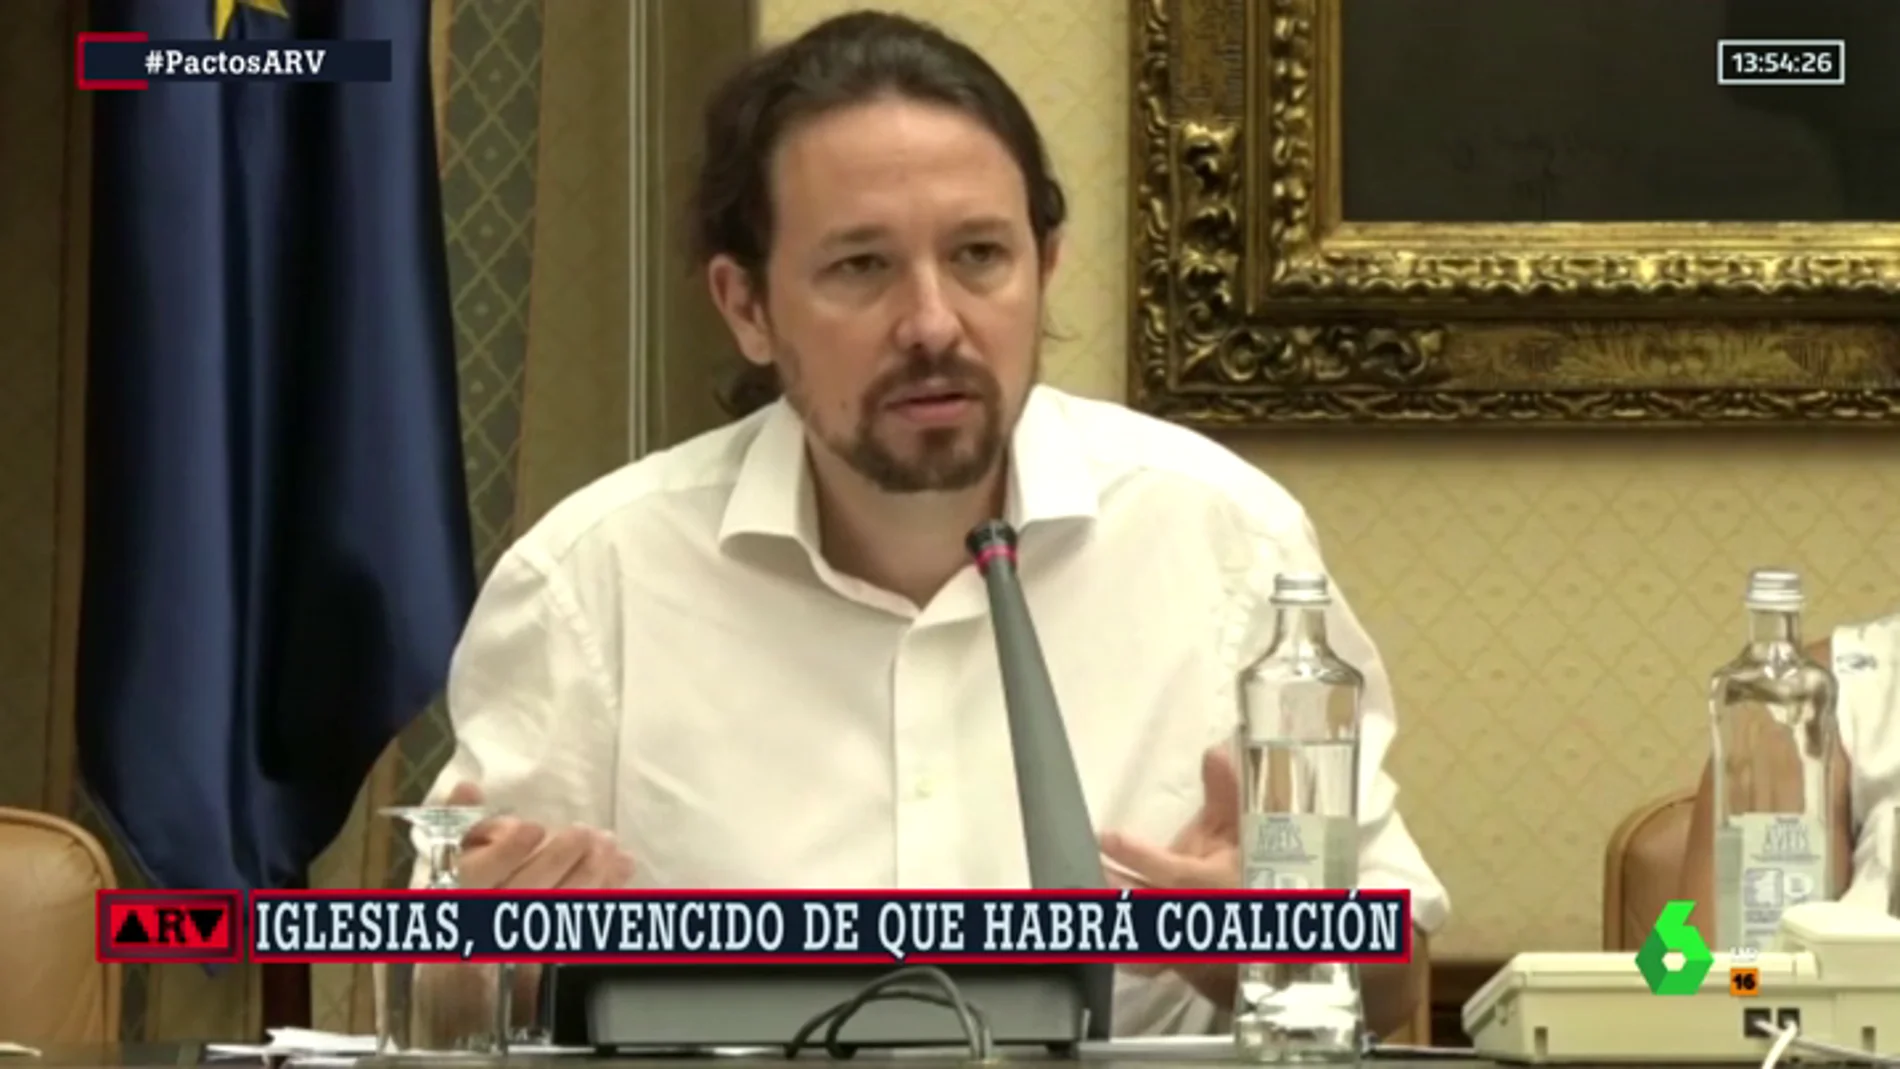 Iglesias, convencido de que habrá coalición: "Estoy convencido de que Sánchez no obligará a votar otra vez por una obsesión"